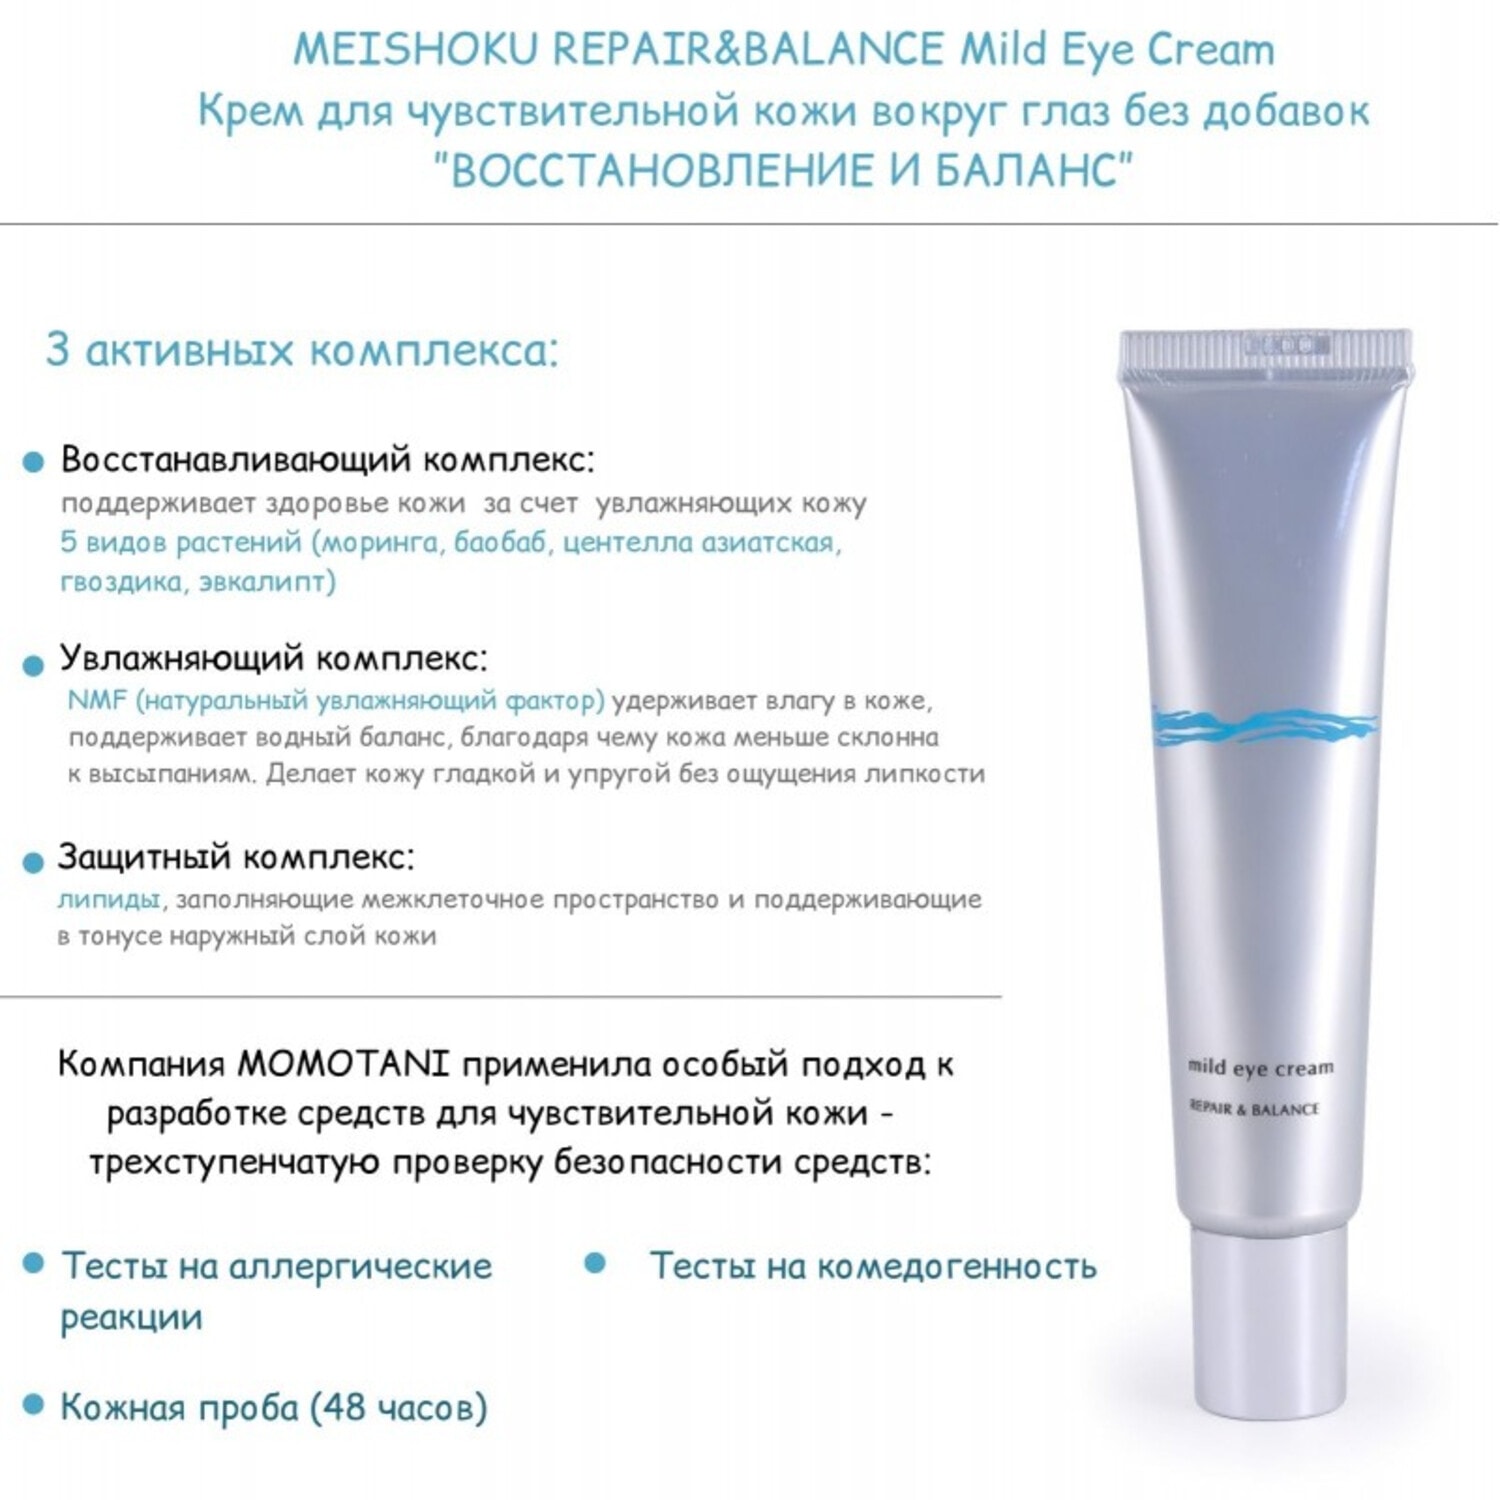 MEISHOKU REPAIR&BALANCE Mild Eye Cream, Крем для чувствительной кожи вокруг глаз без добавок ”ВОССТАНОВЛЕНИЕ И БАЛАНС”, 20г. / 297076